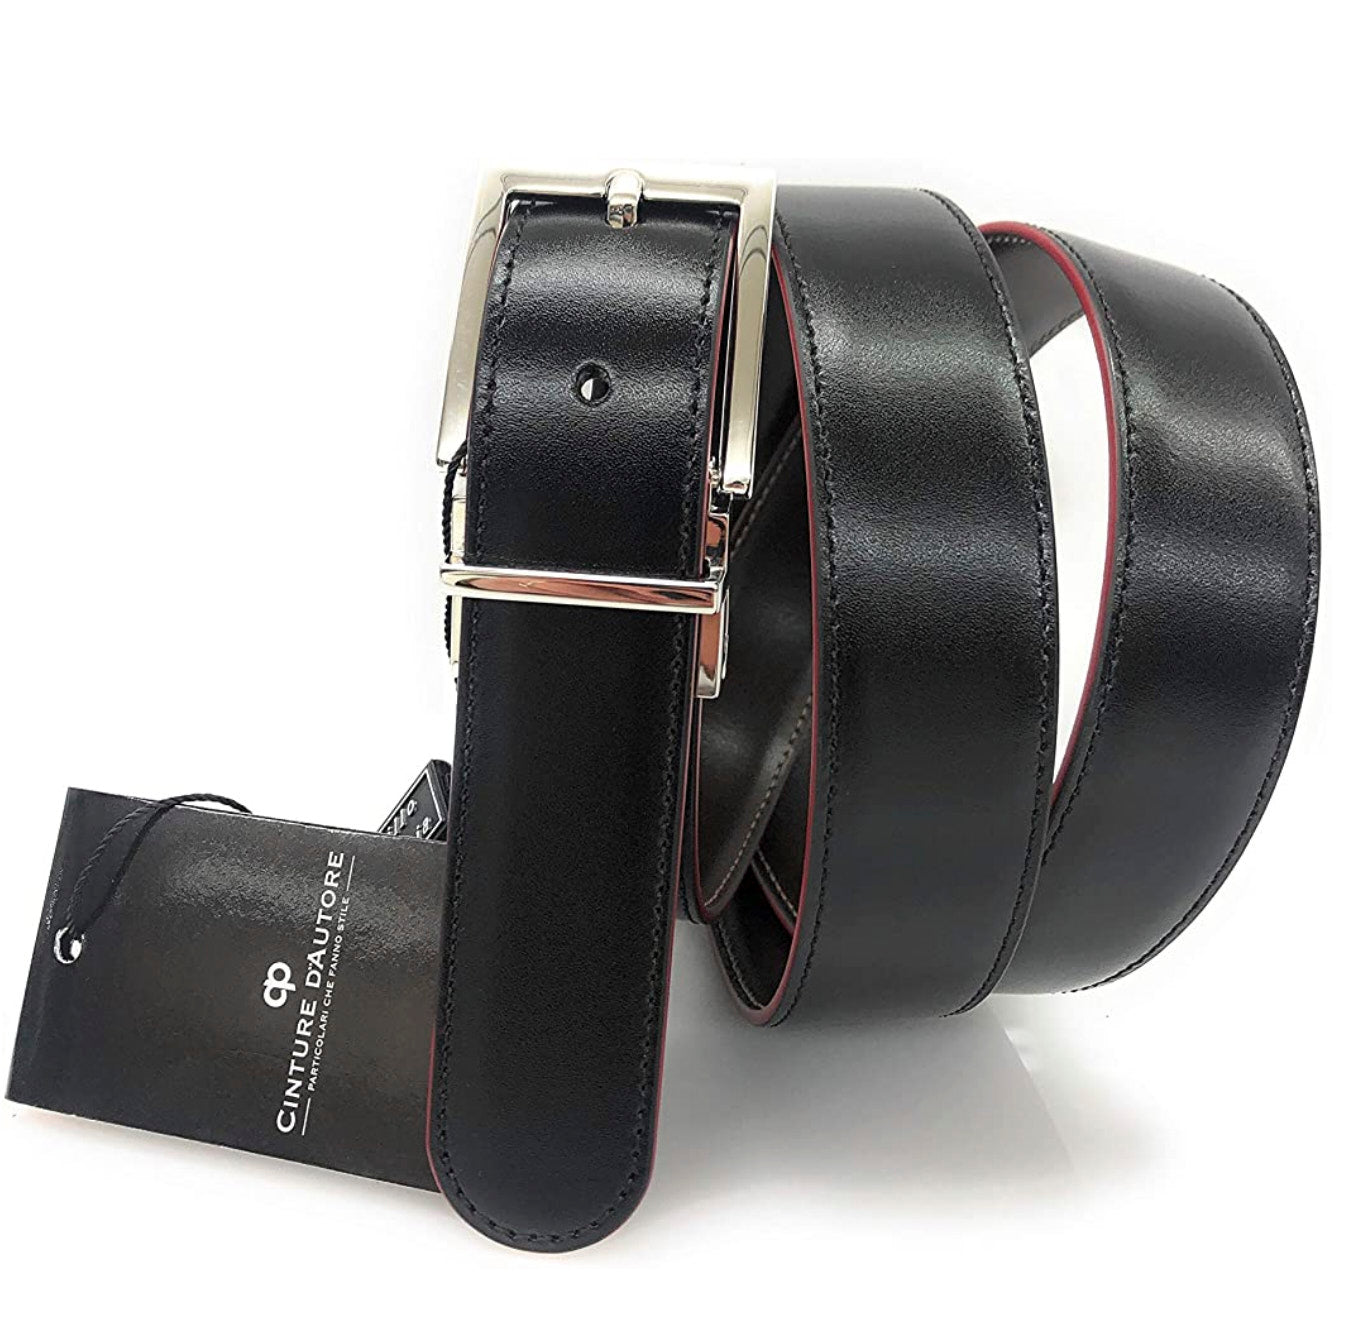 Cintura in vera pelle Reversibile Nero/ Moro con bordo rosso h30. Made in italy